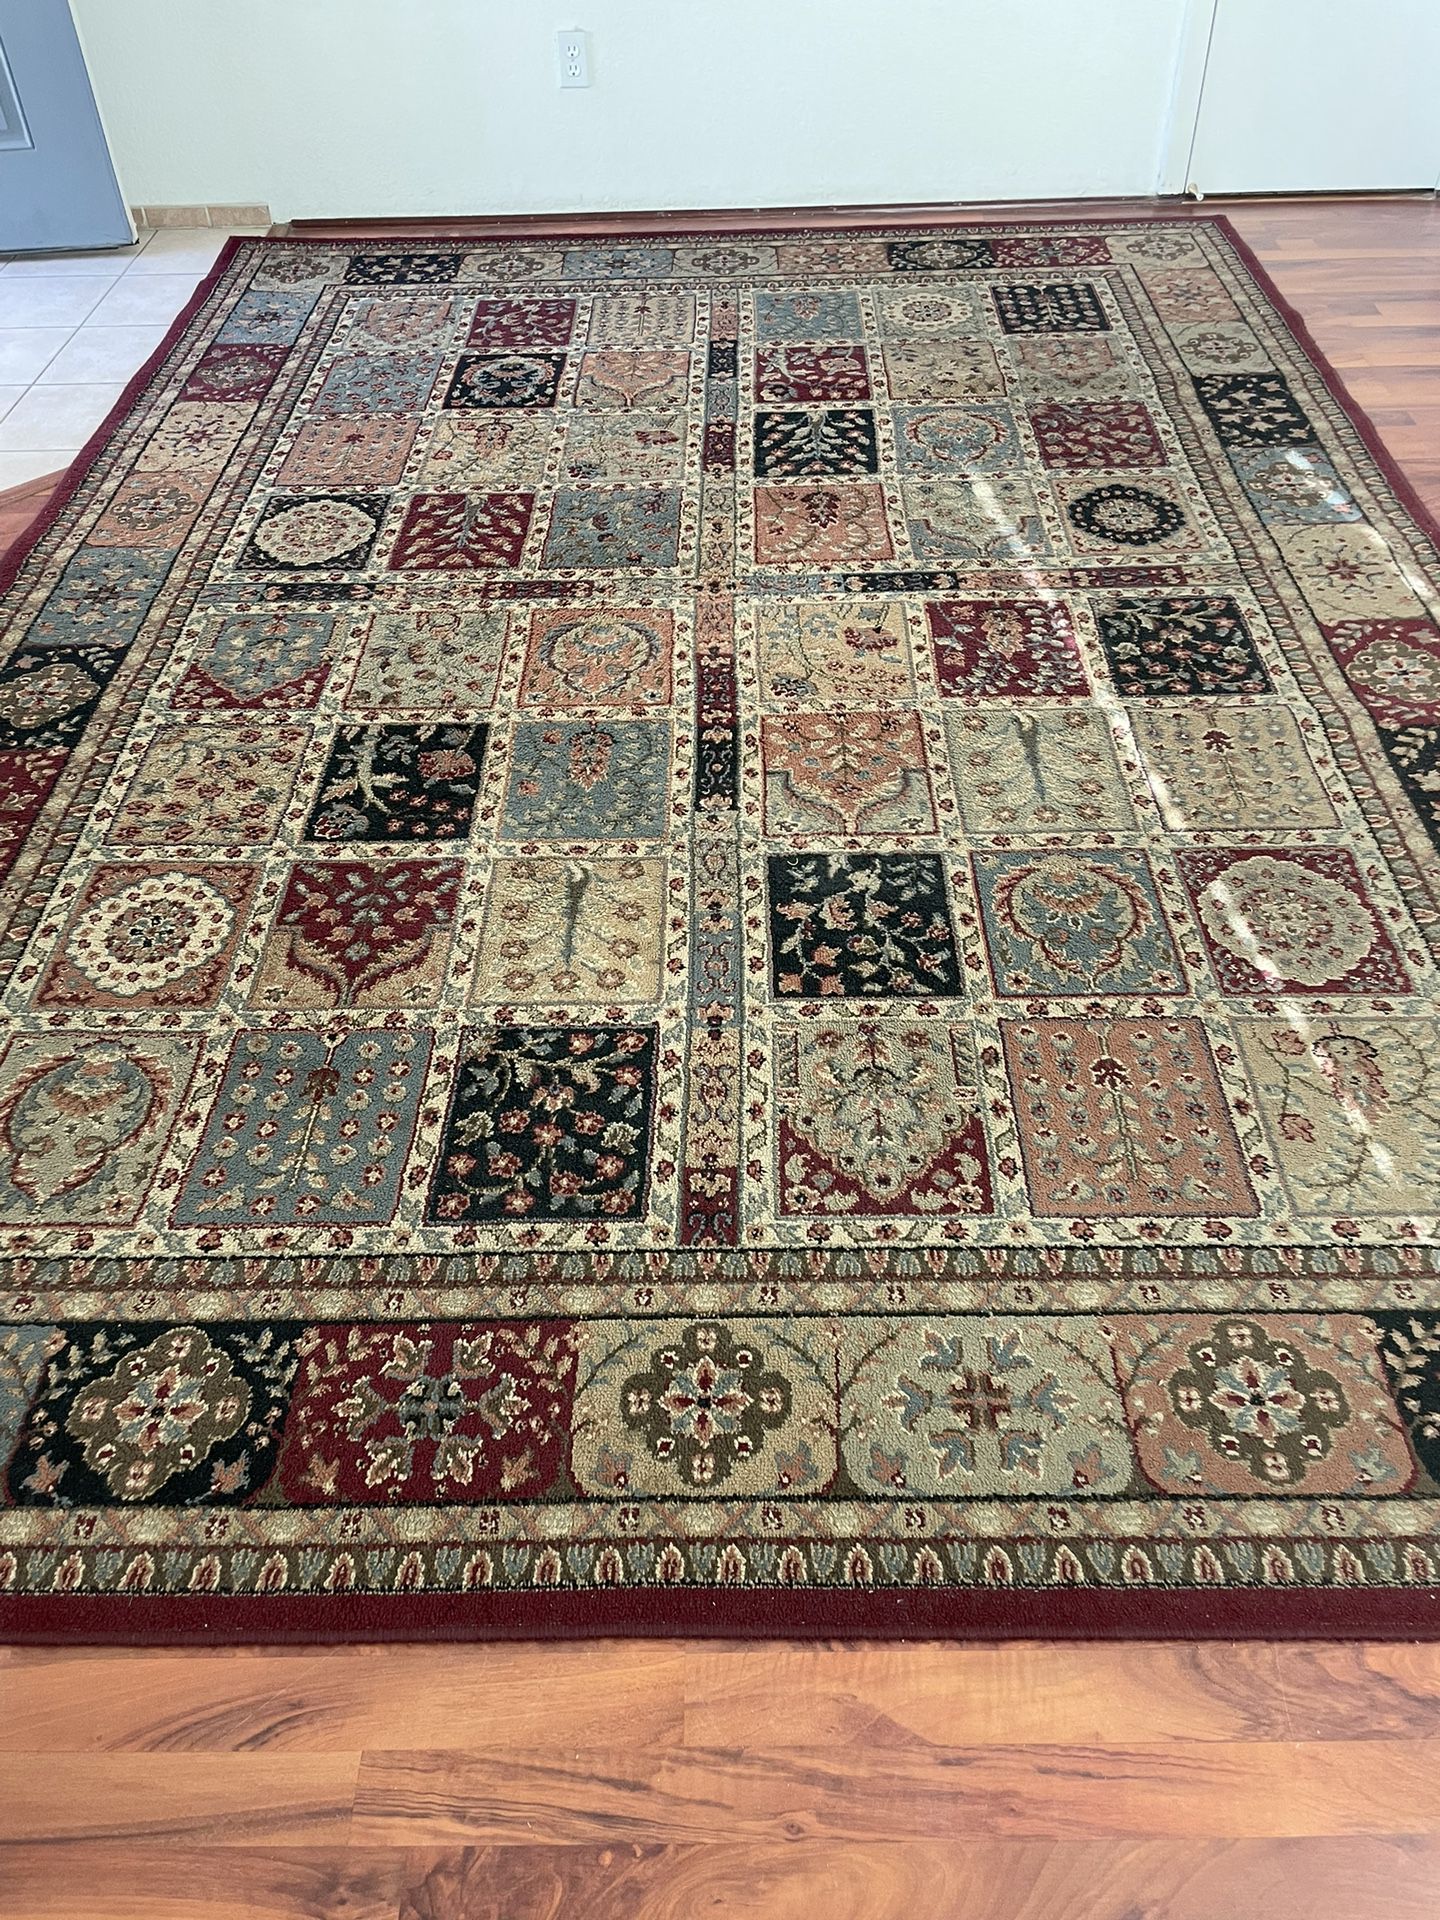 Four Seasons Carpet 7’9” By 10’9”